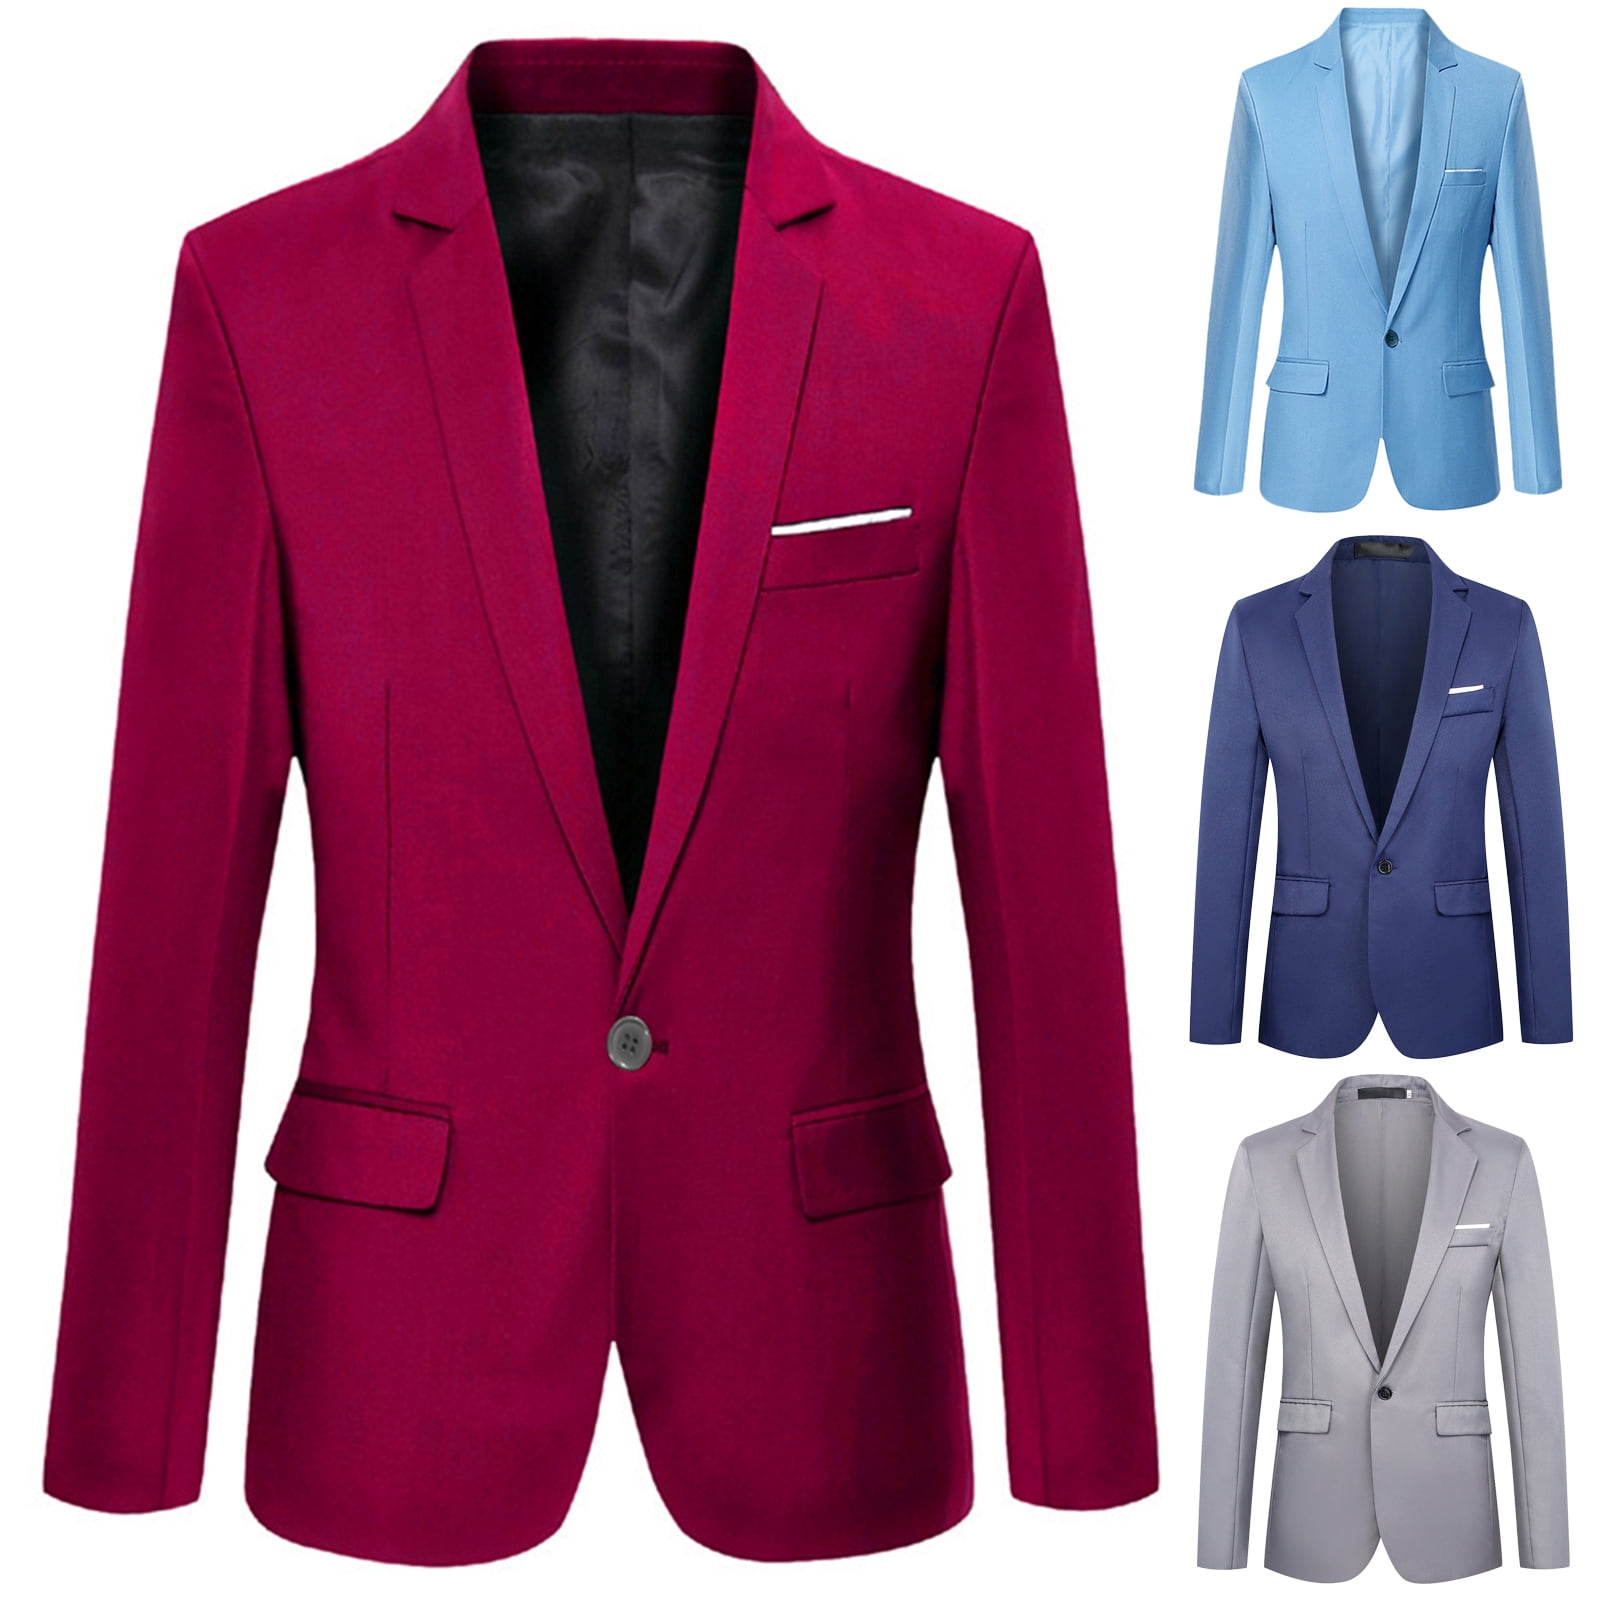 Uehgn Fashion Men Solid Color Long Sleeve Lapel Slim Fit Blazer Suit ...